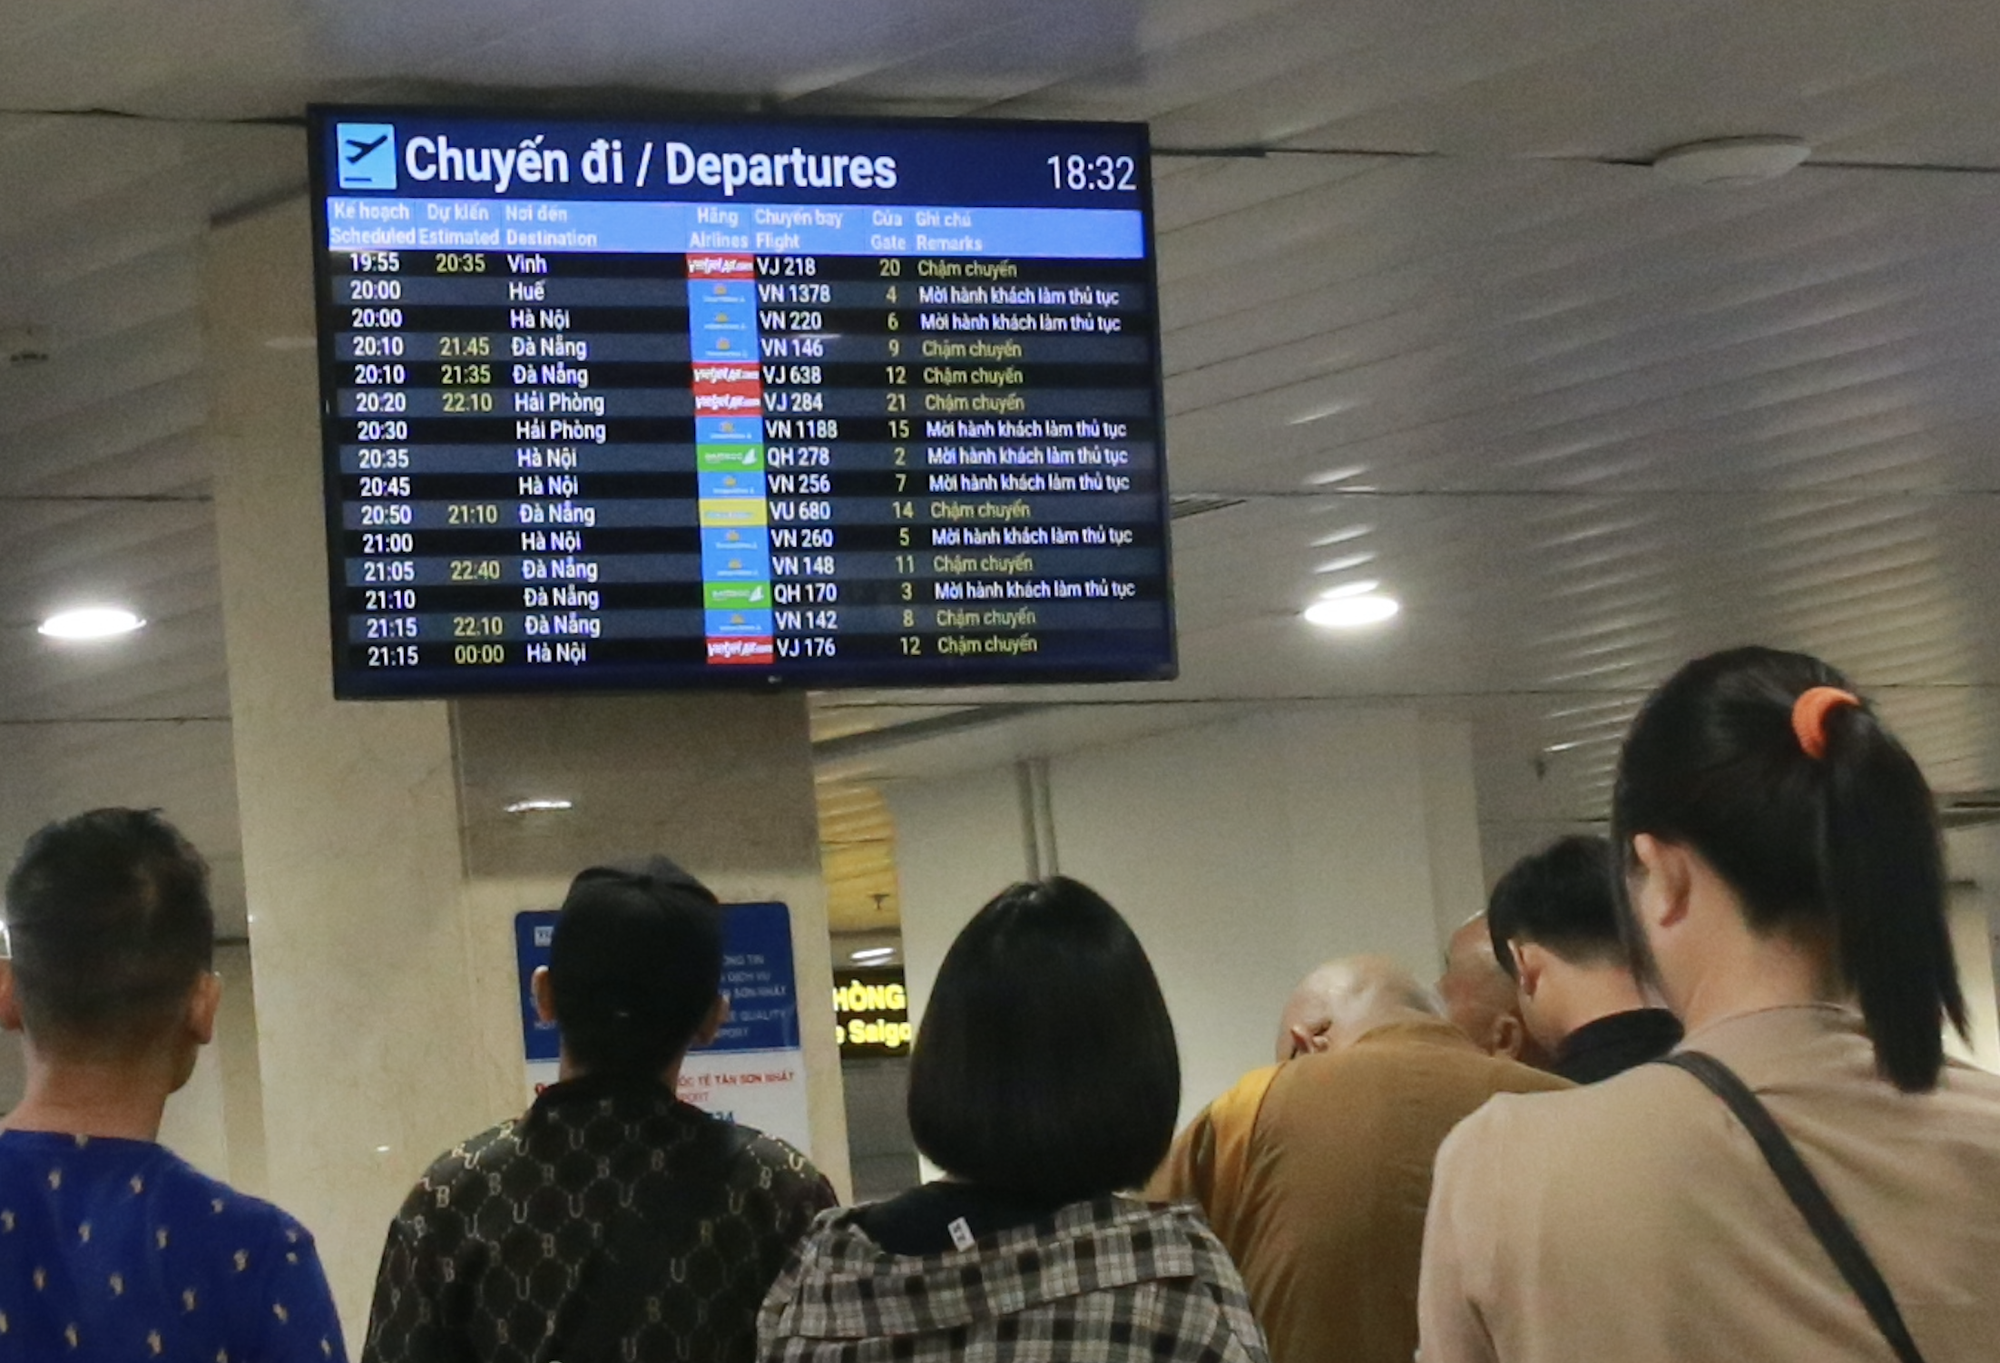 Hàng loạt chuyến bay bị delay trong ngày TP.HCM xuất hiện mưa đá: Ra sân bay từ 2h trưa đến 8h tối vẫn chưa bay được - Ảnh 1.